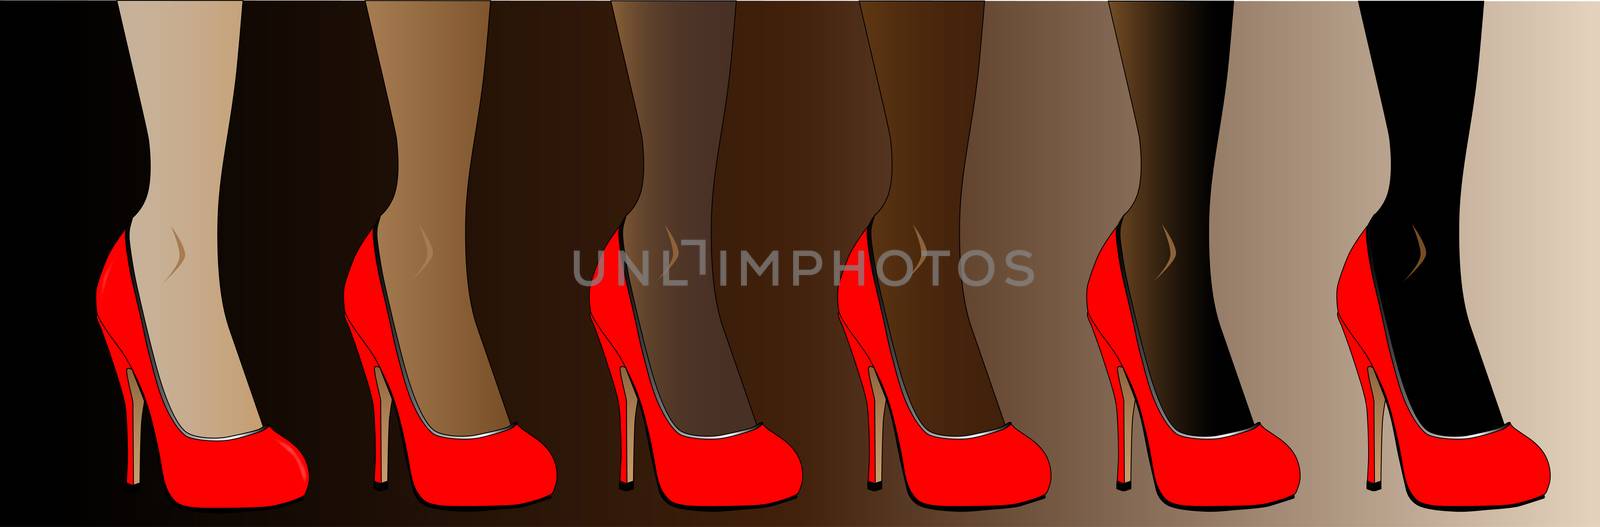 Legs in various skin tones, all wearing re stiletto heels.